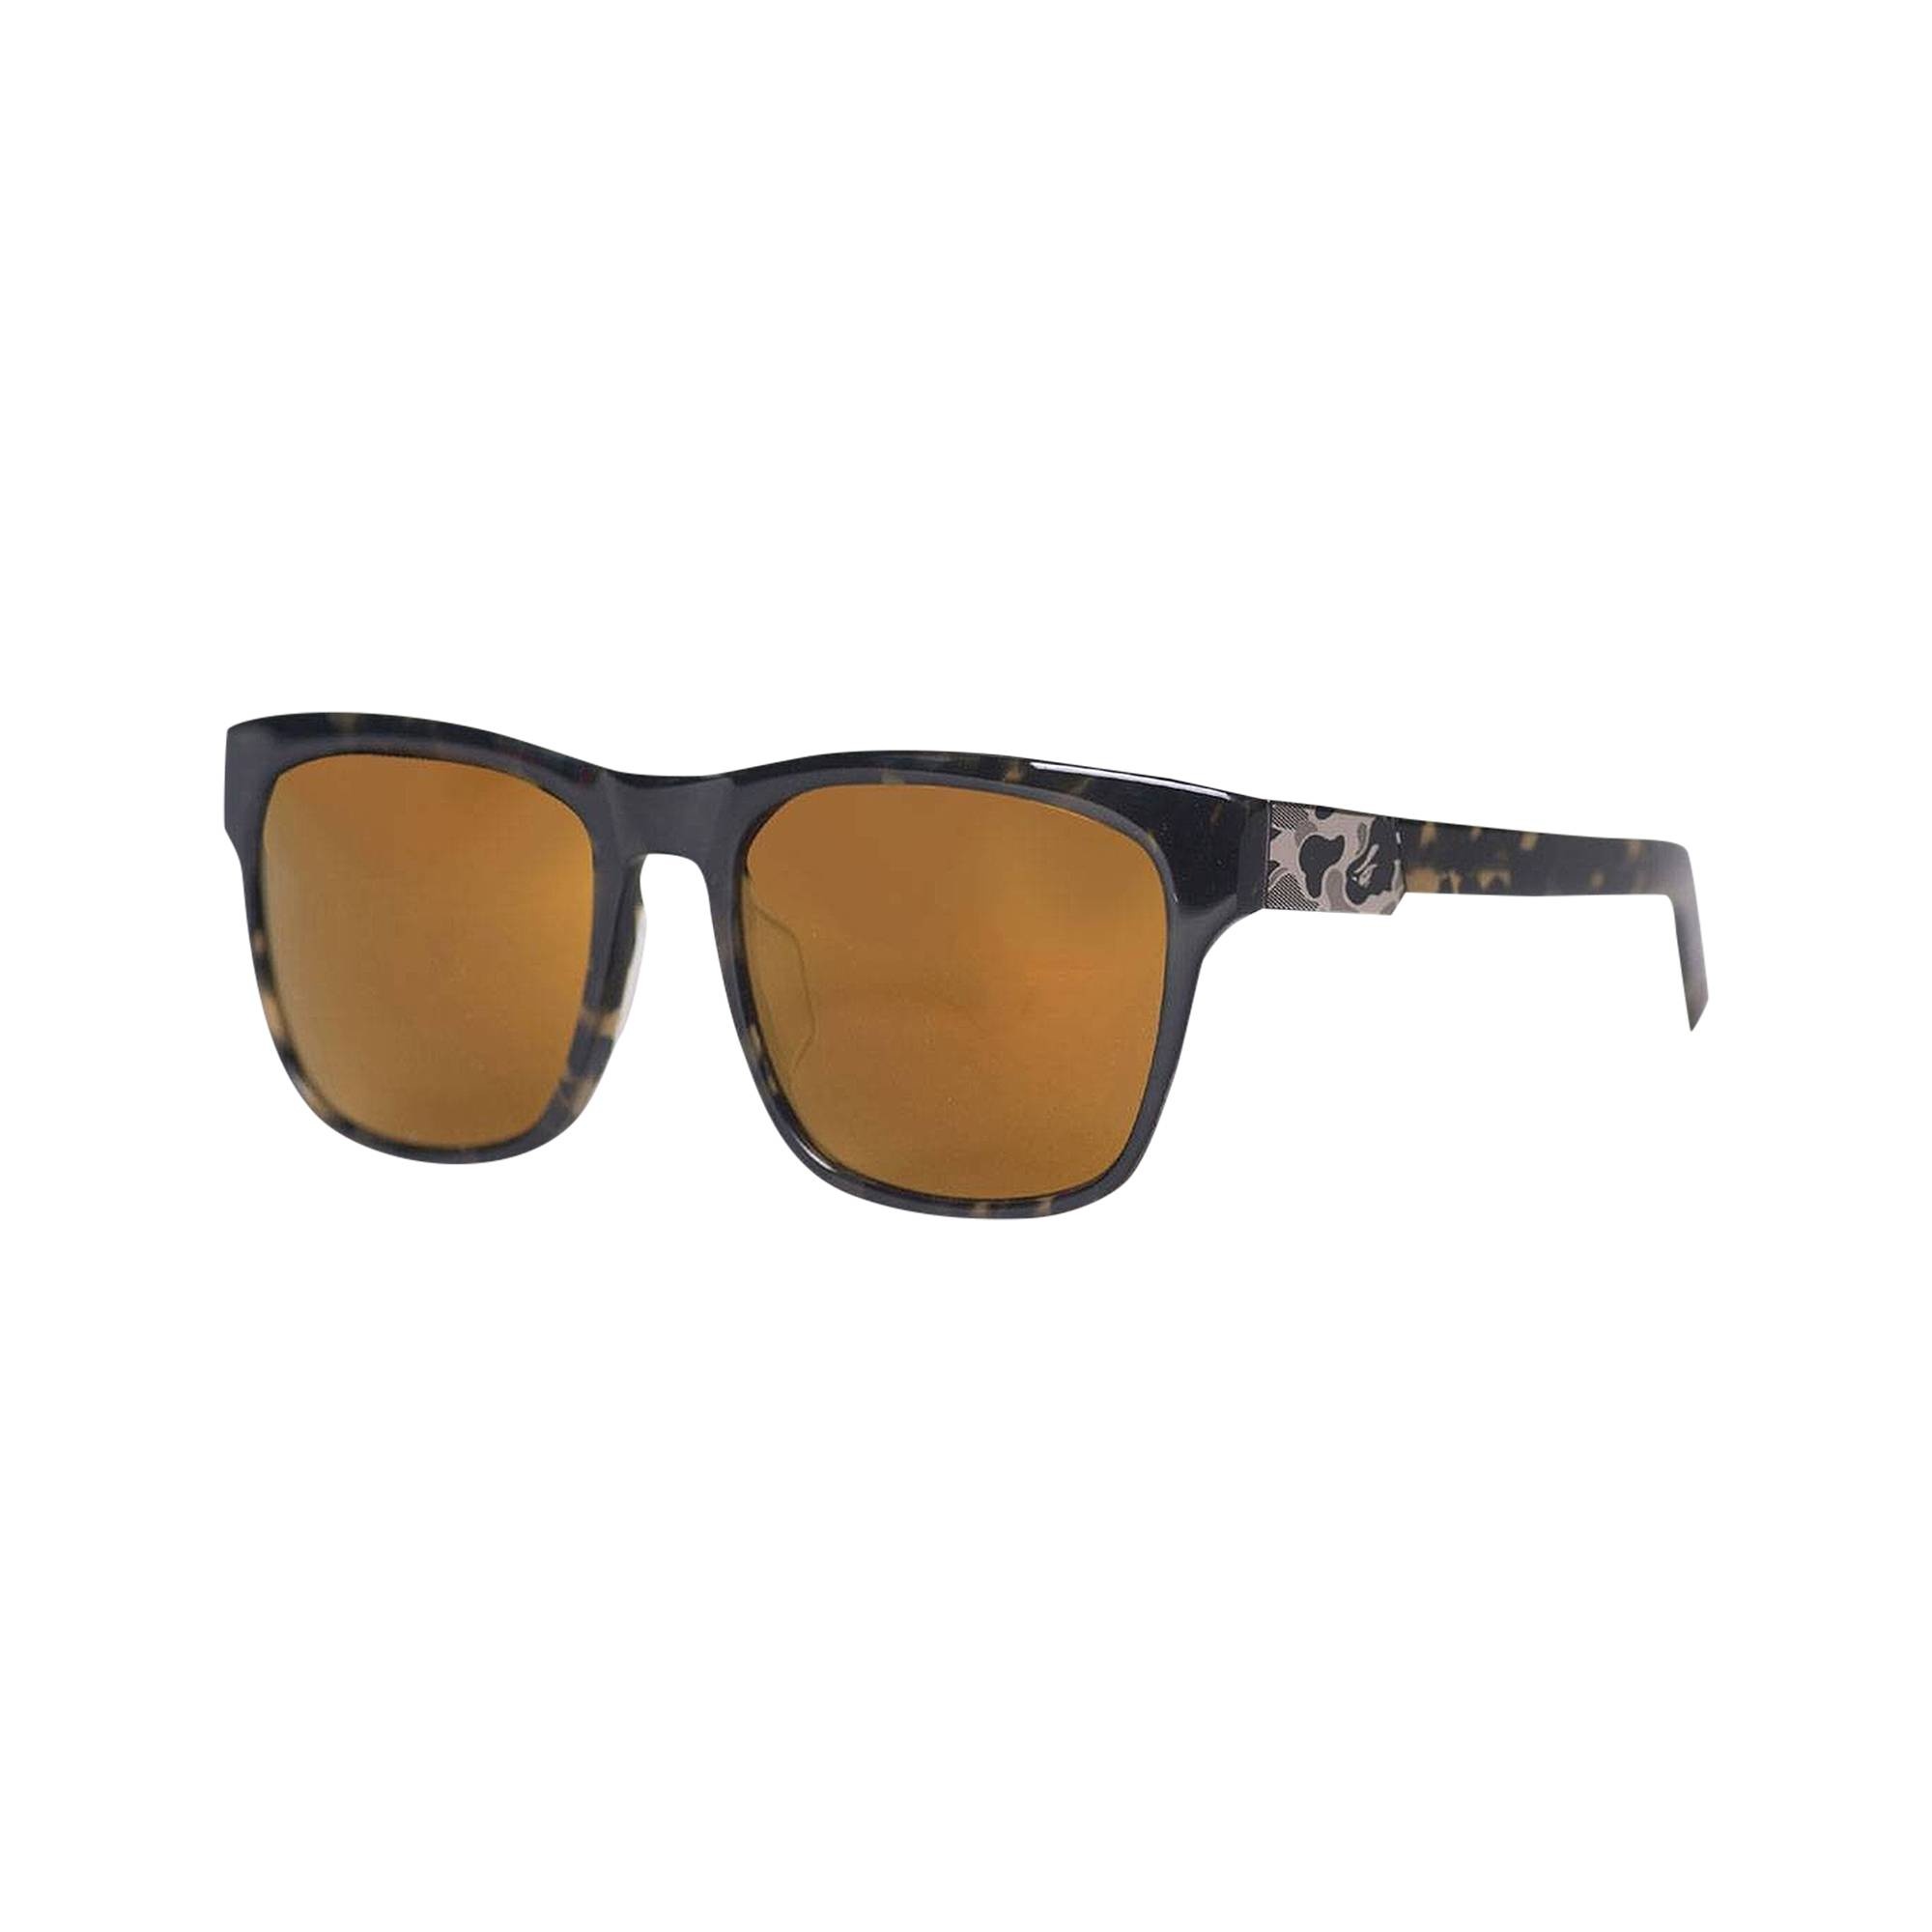 BAPE CM Sunglasses 'Camo' - 1